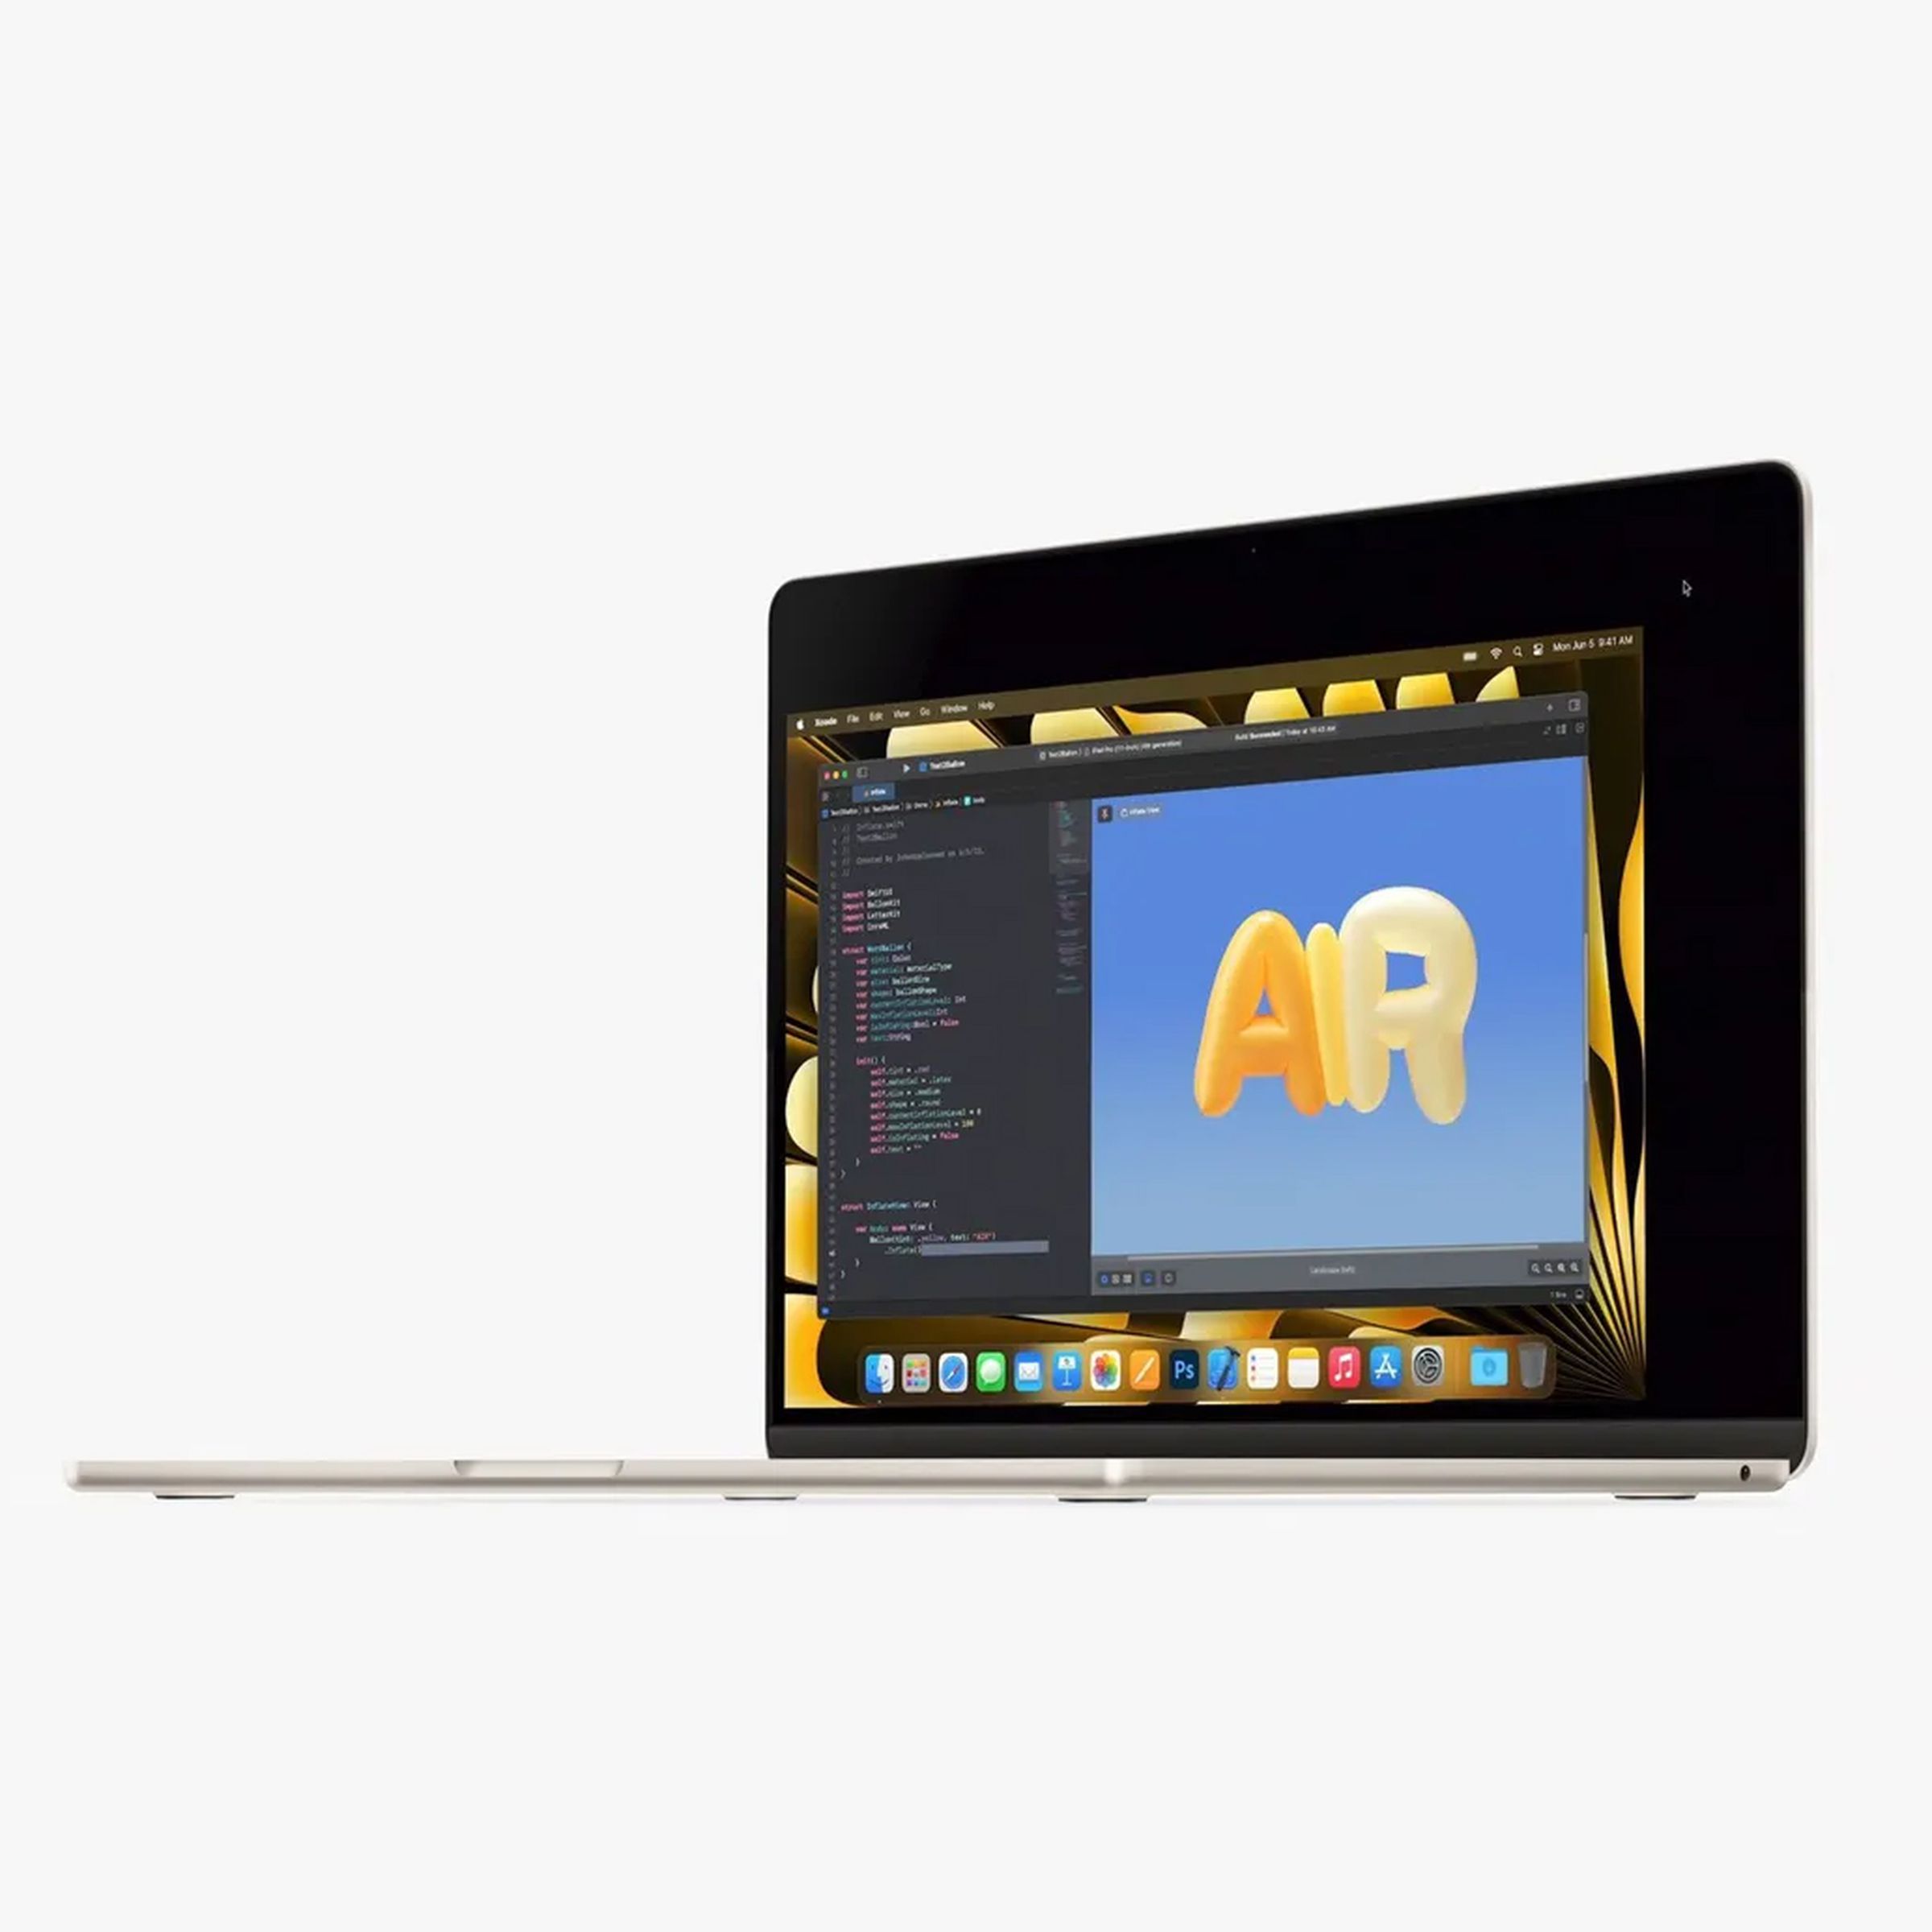 Apple MacBook Air 15 Press Image 2